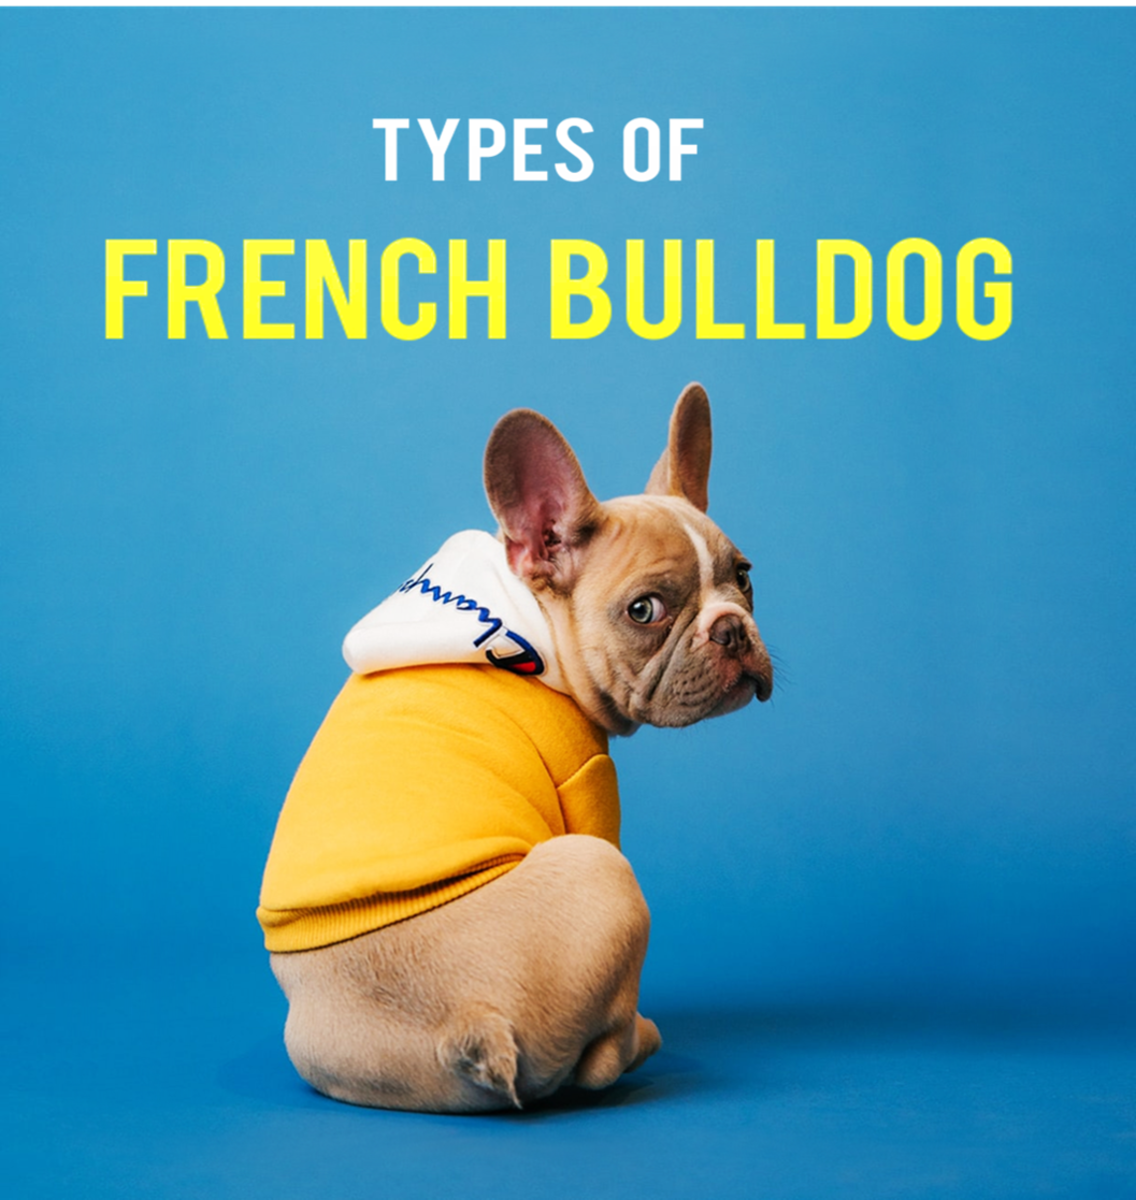 Types of French Bulldog